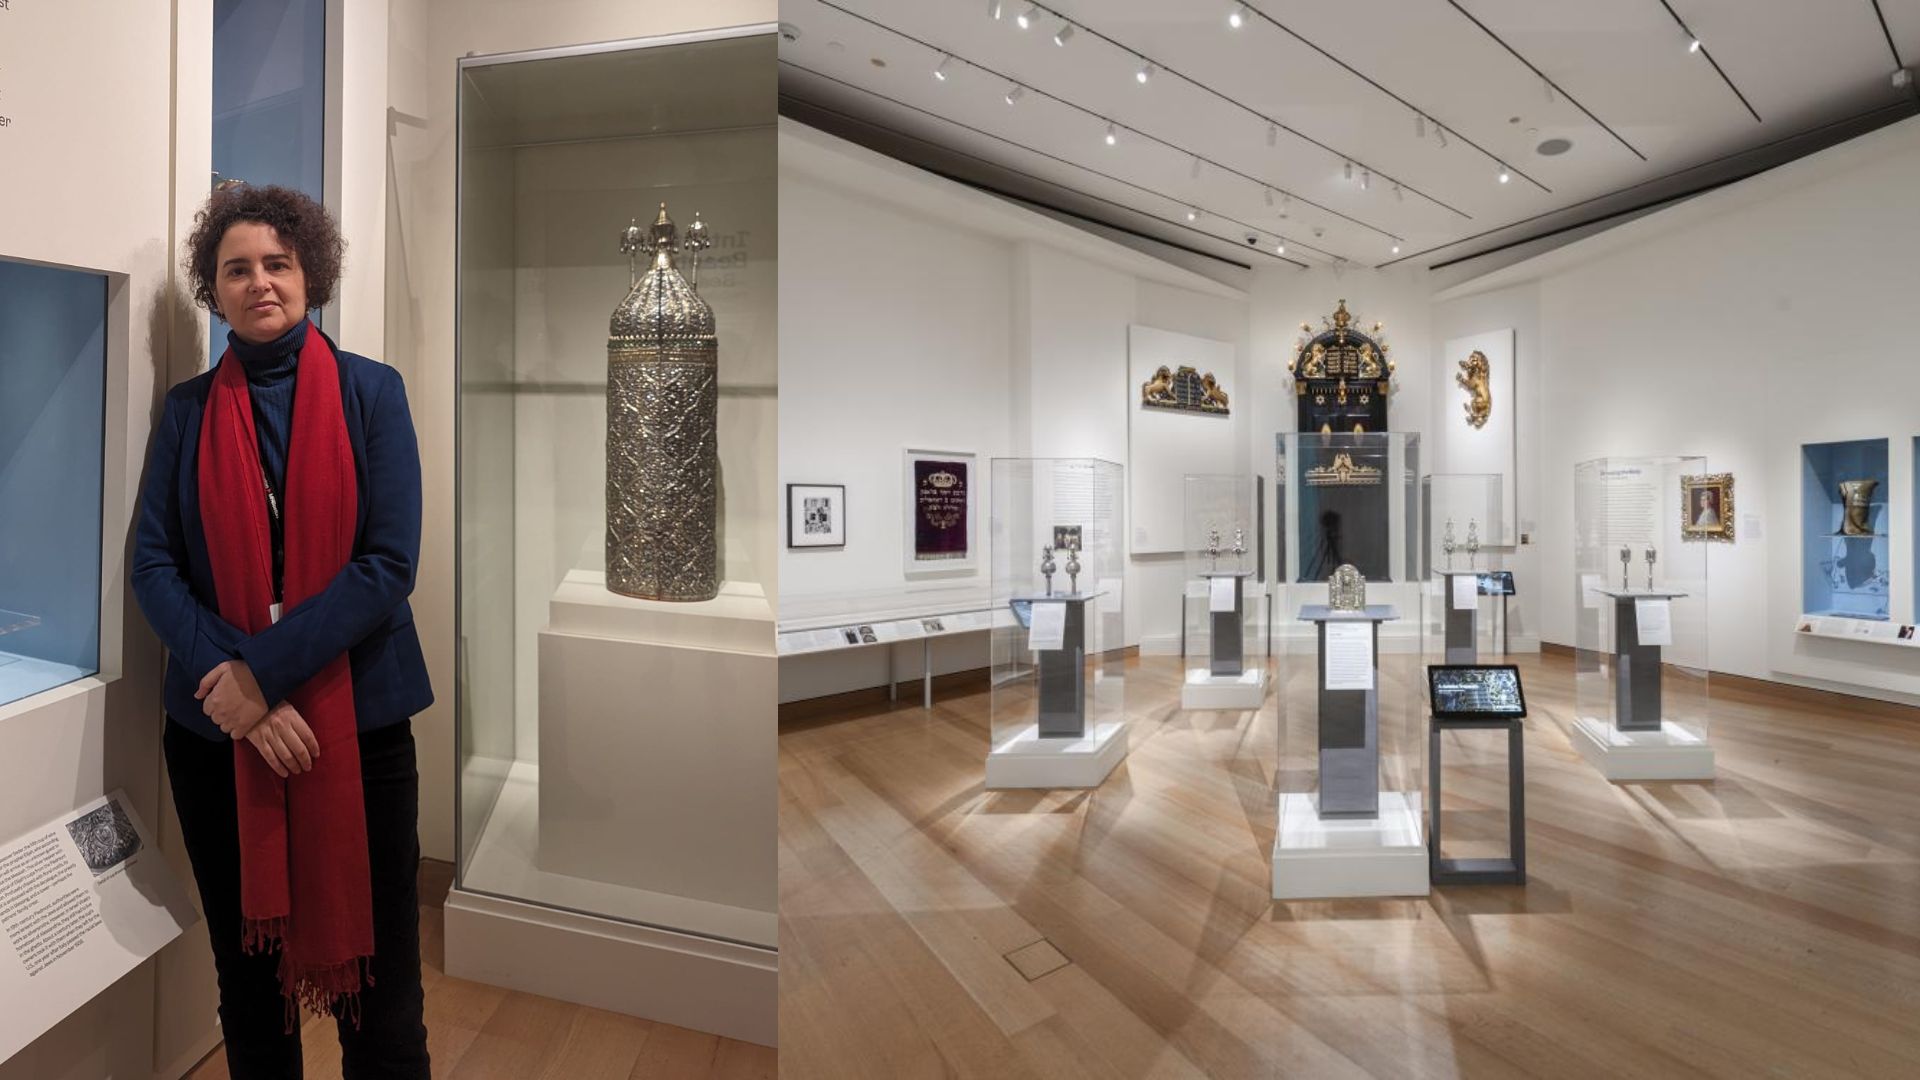 La nuova galleria di arte ebraica al Museum of Fine Arts di Boston. Intervista alla curatrice Simona Di Nepi